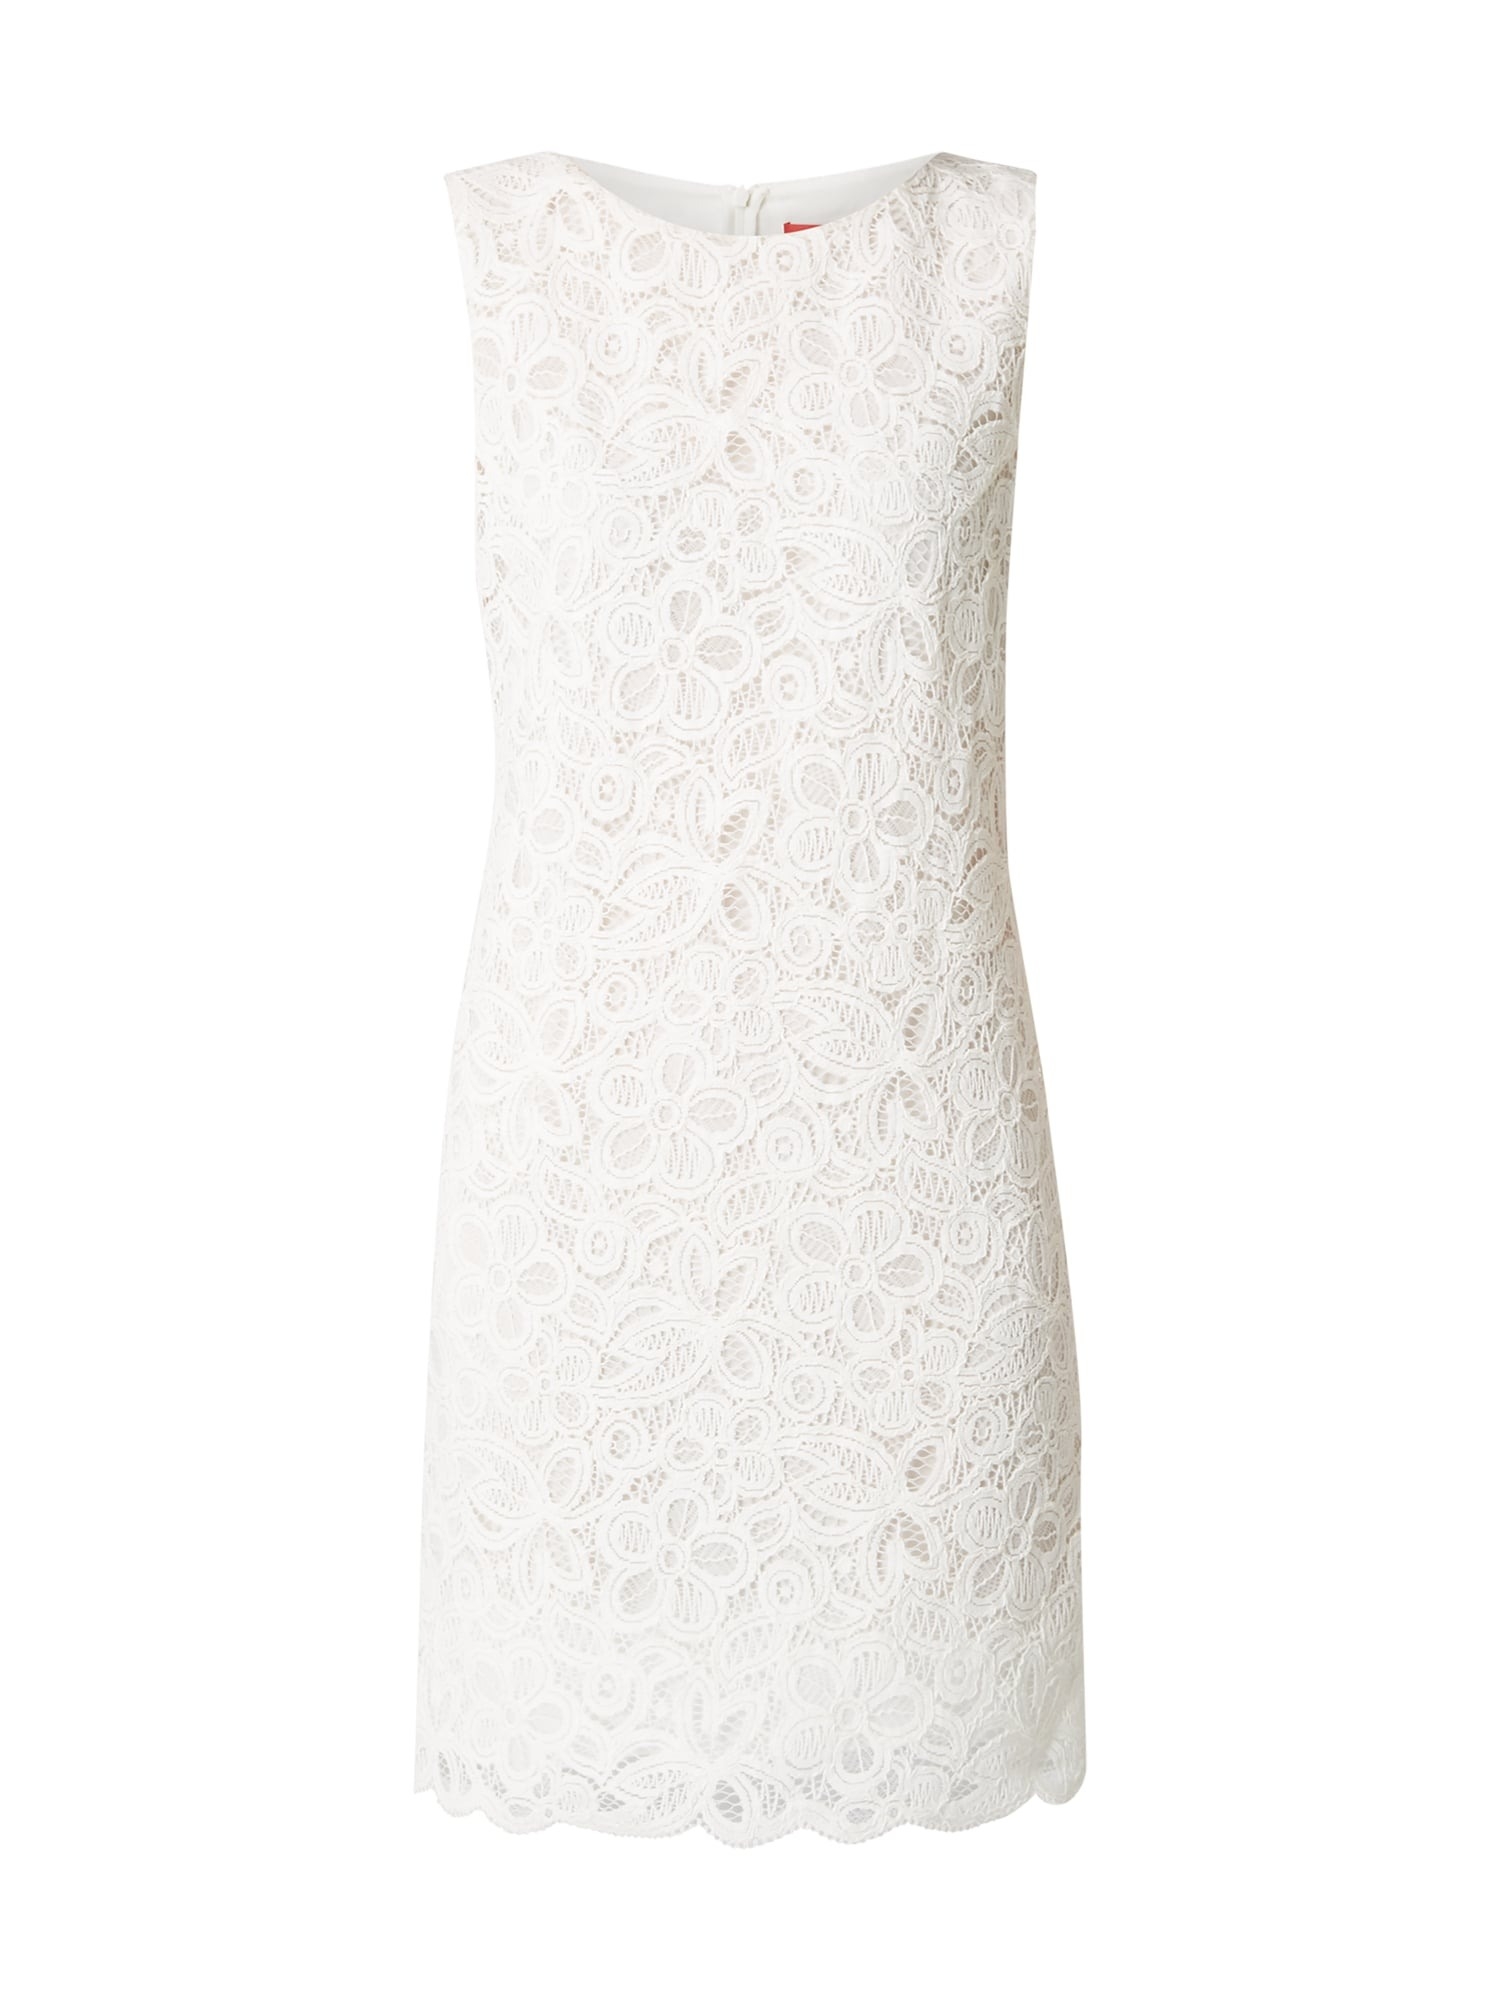 13 Spektakulär Kleid Weiß Spitze Galerie Coolste Kleid Weiß Spitze Design